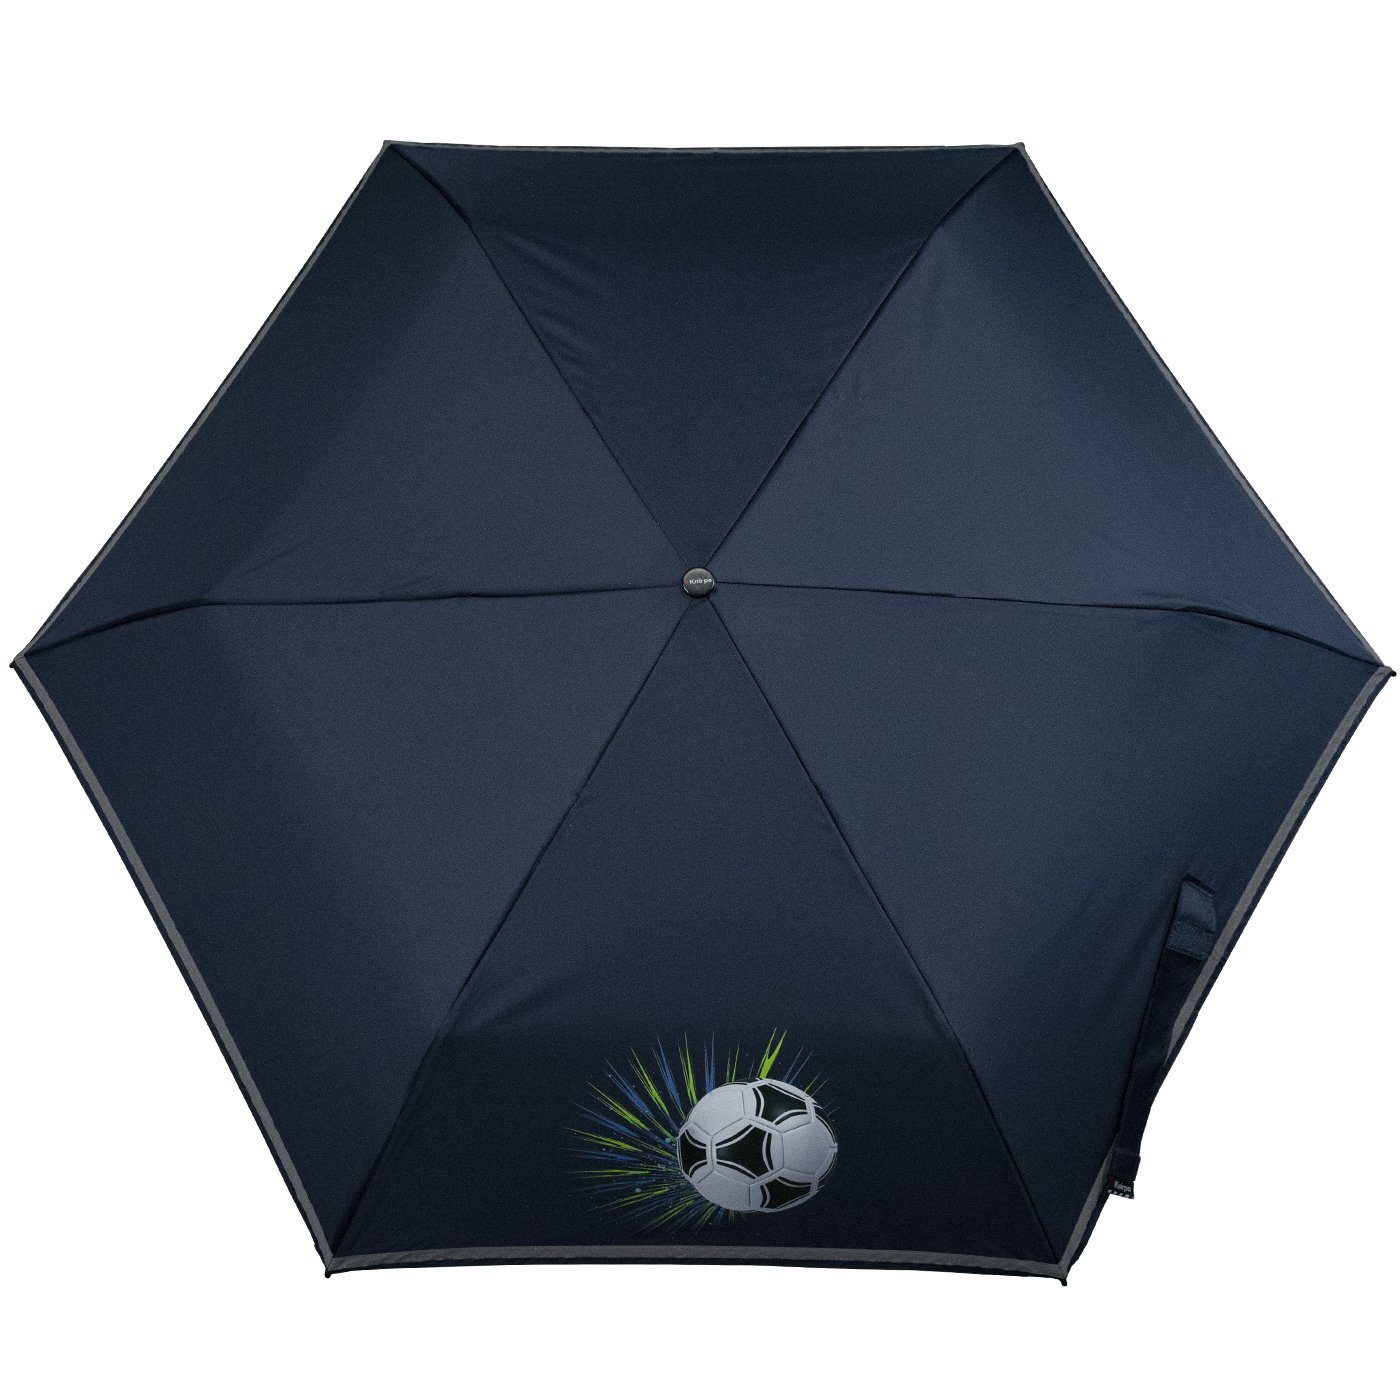 Knirps® Reflexborte, 4Kids Taschenregenschirm mit Kinderschirm dem Fussball, reflective Schulweg, Sicherheit auf white Goal